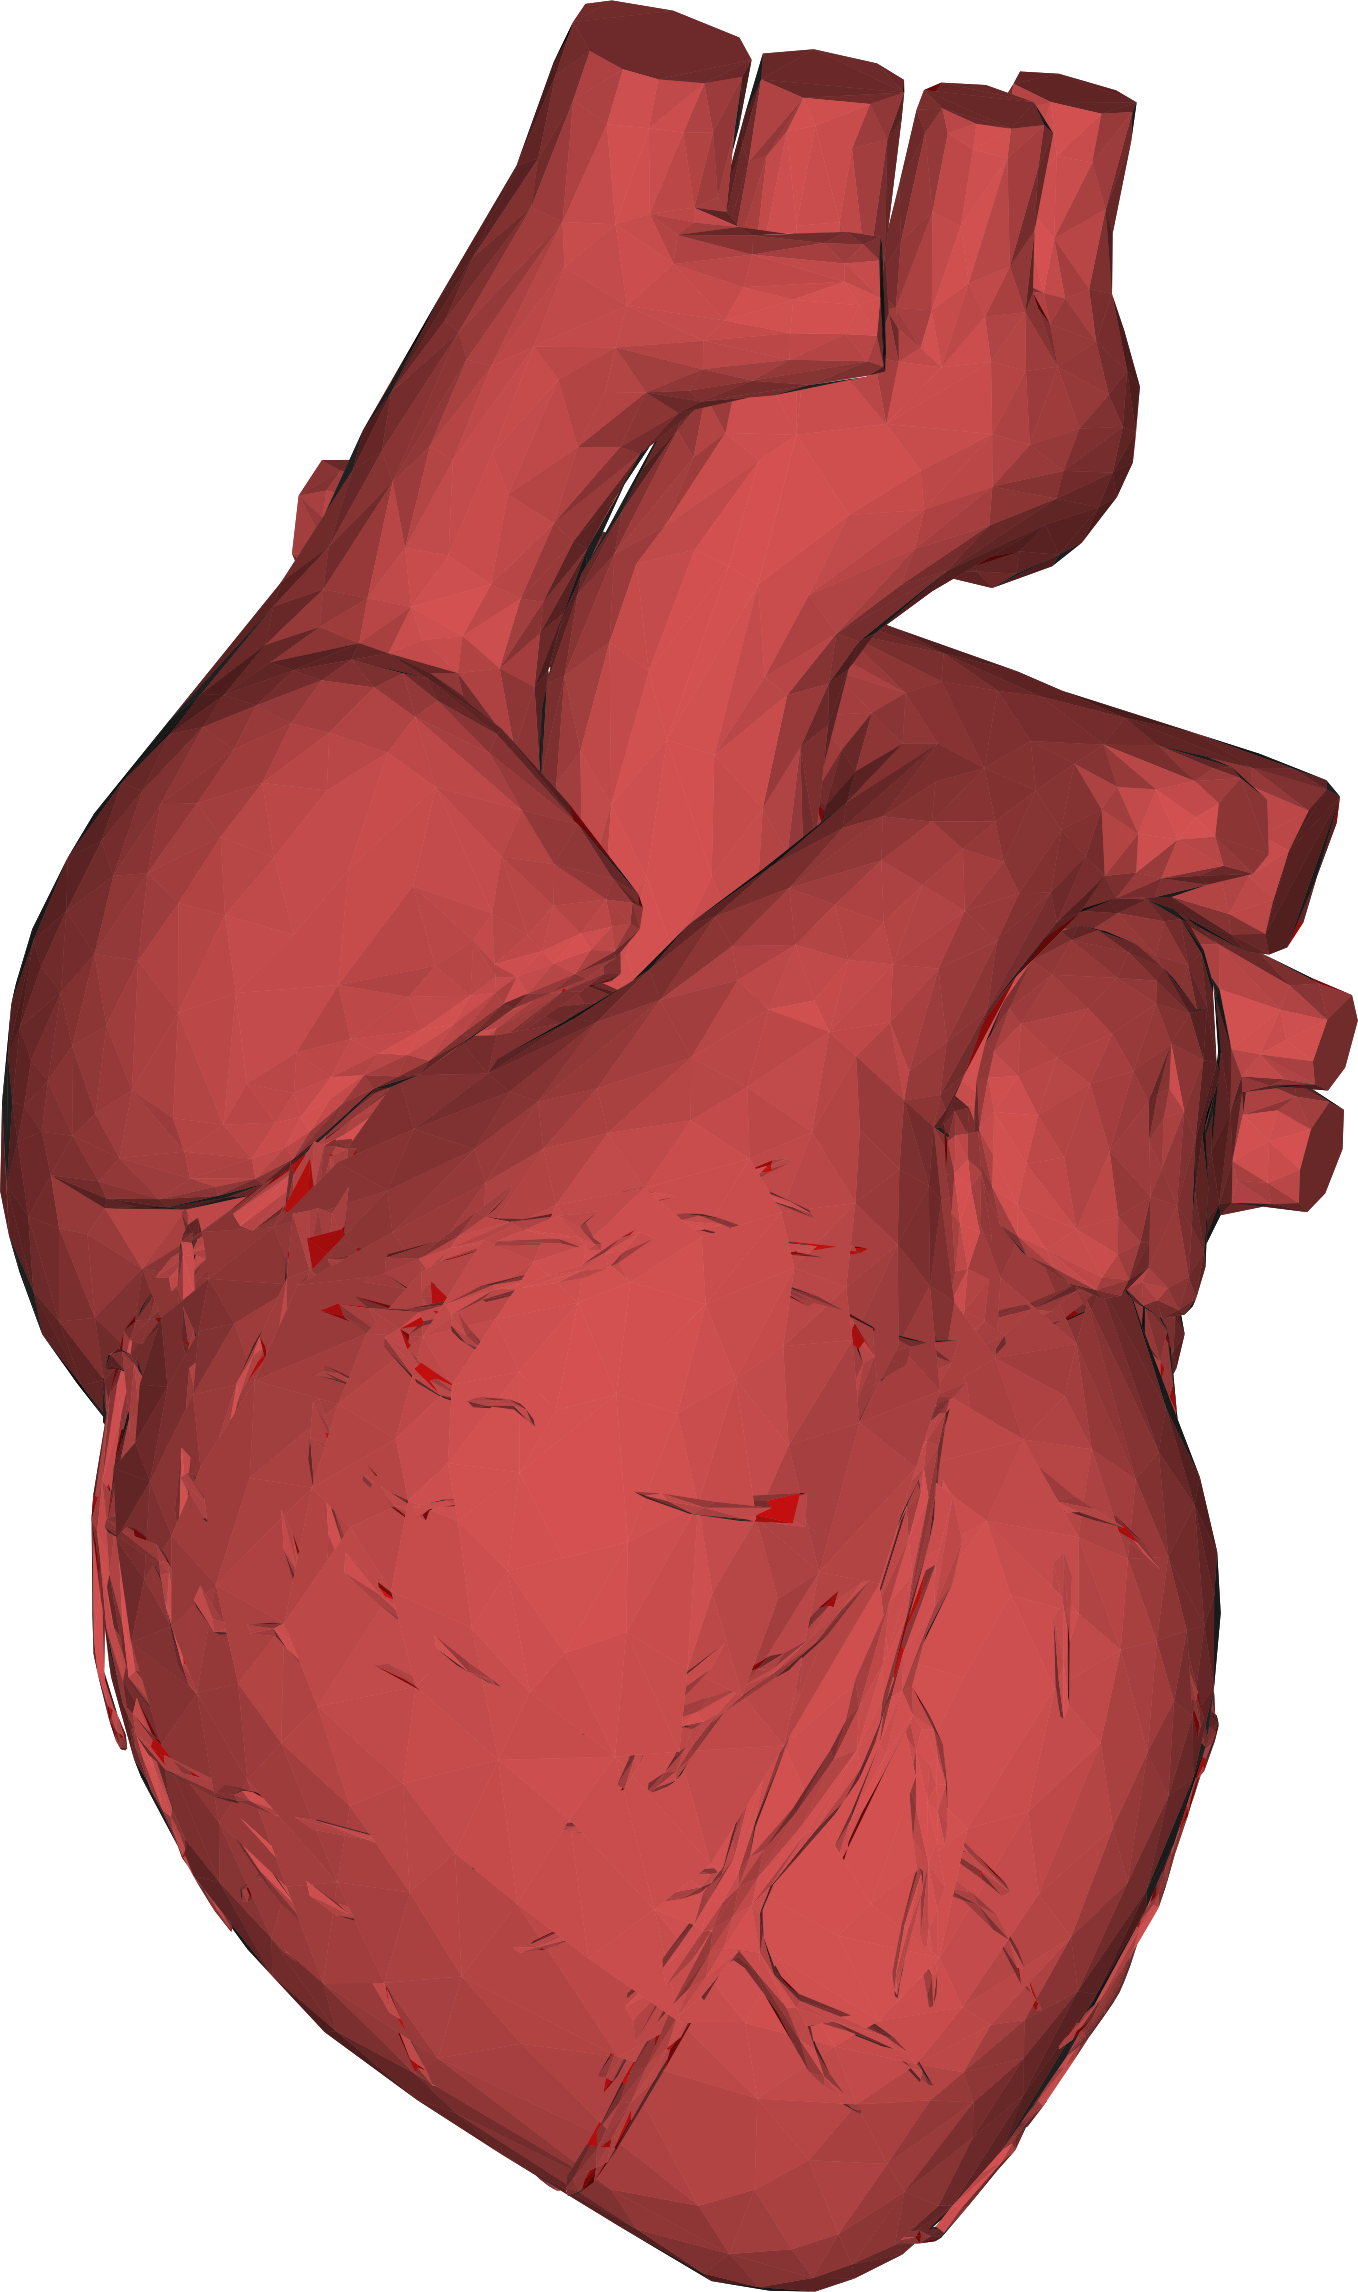 Big Image - Human Heart 3d Png (1358x2292)